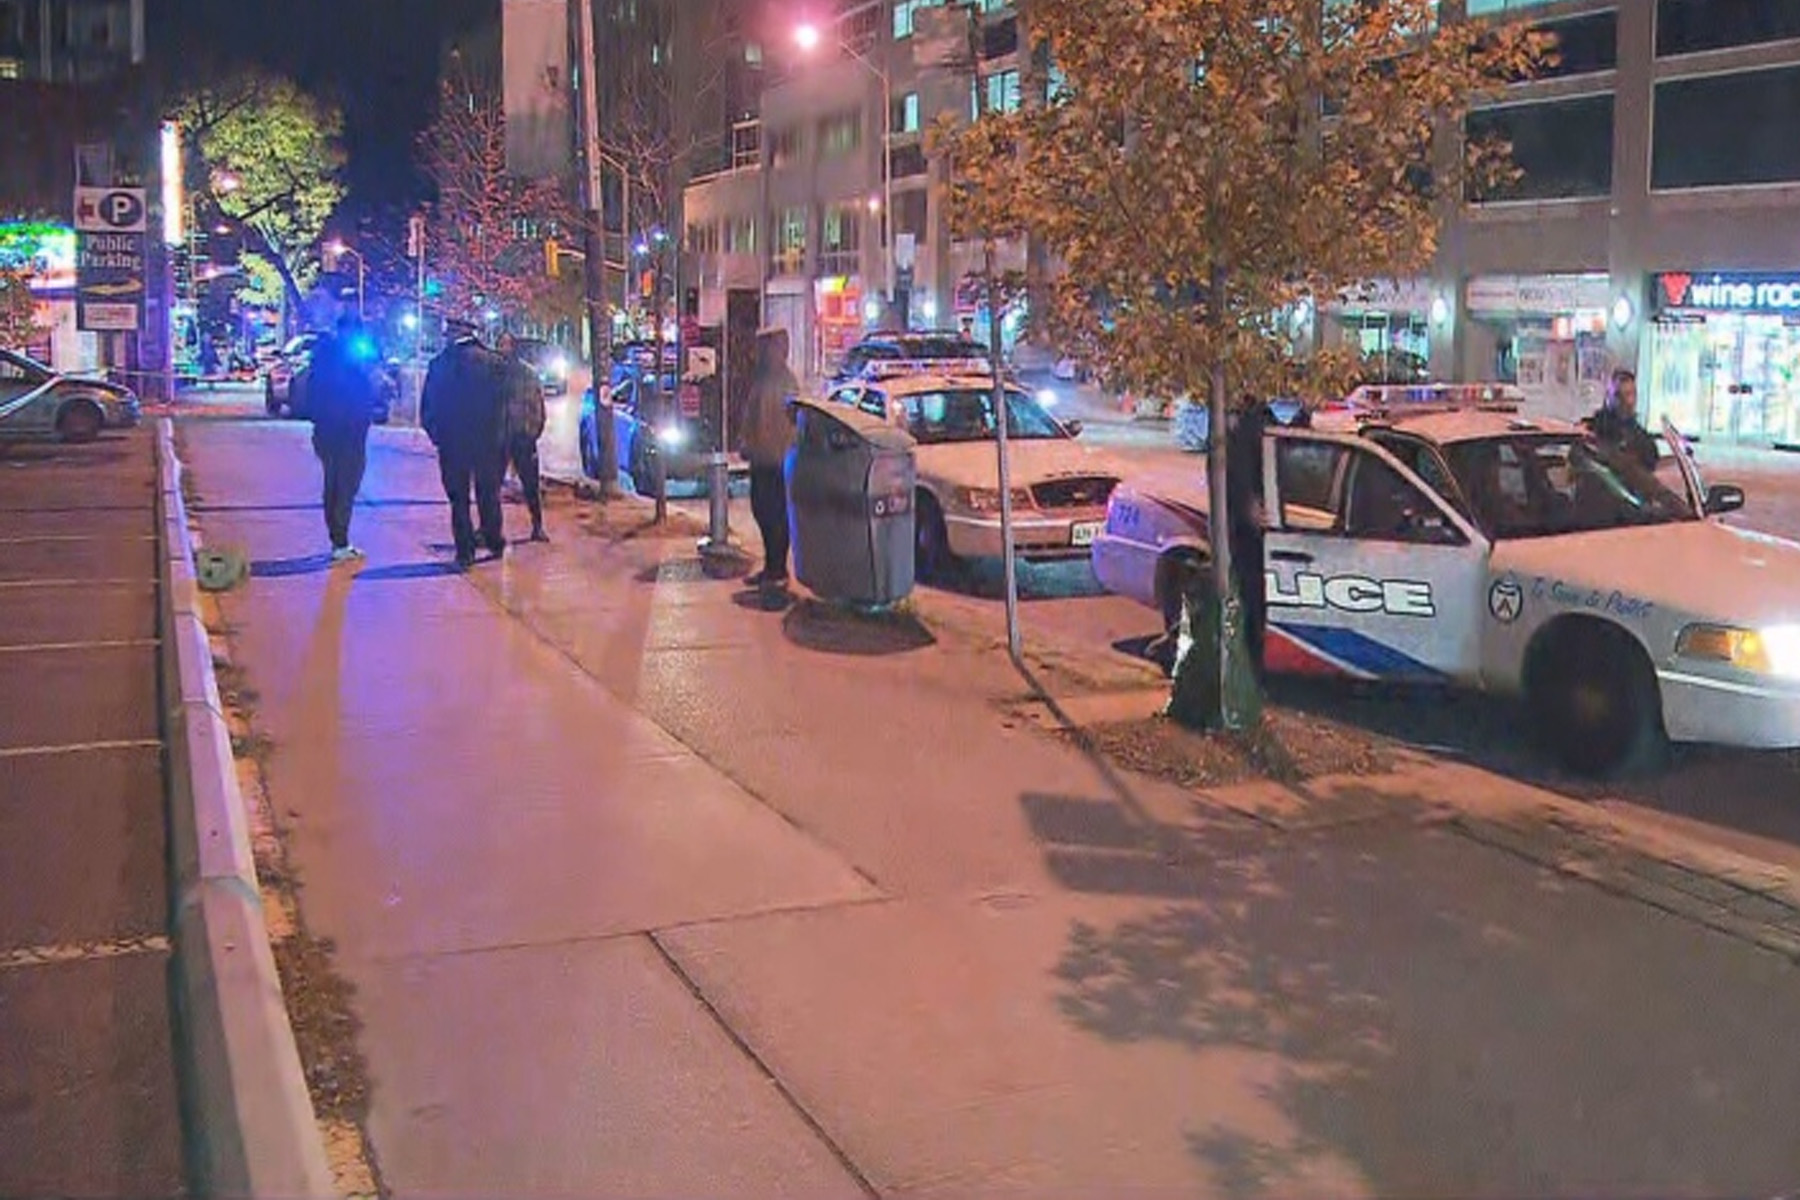 تیراندازی در مرکز شهر تورنتو : انتقال مردی که به شدت زخمی شده بود به بیمارستان